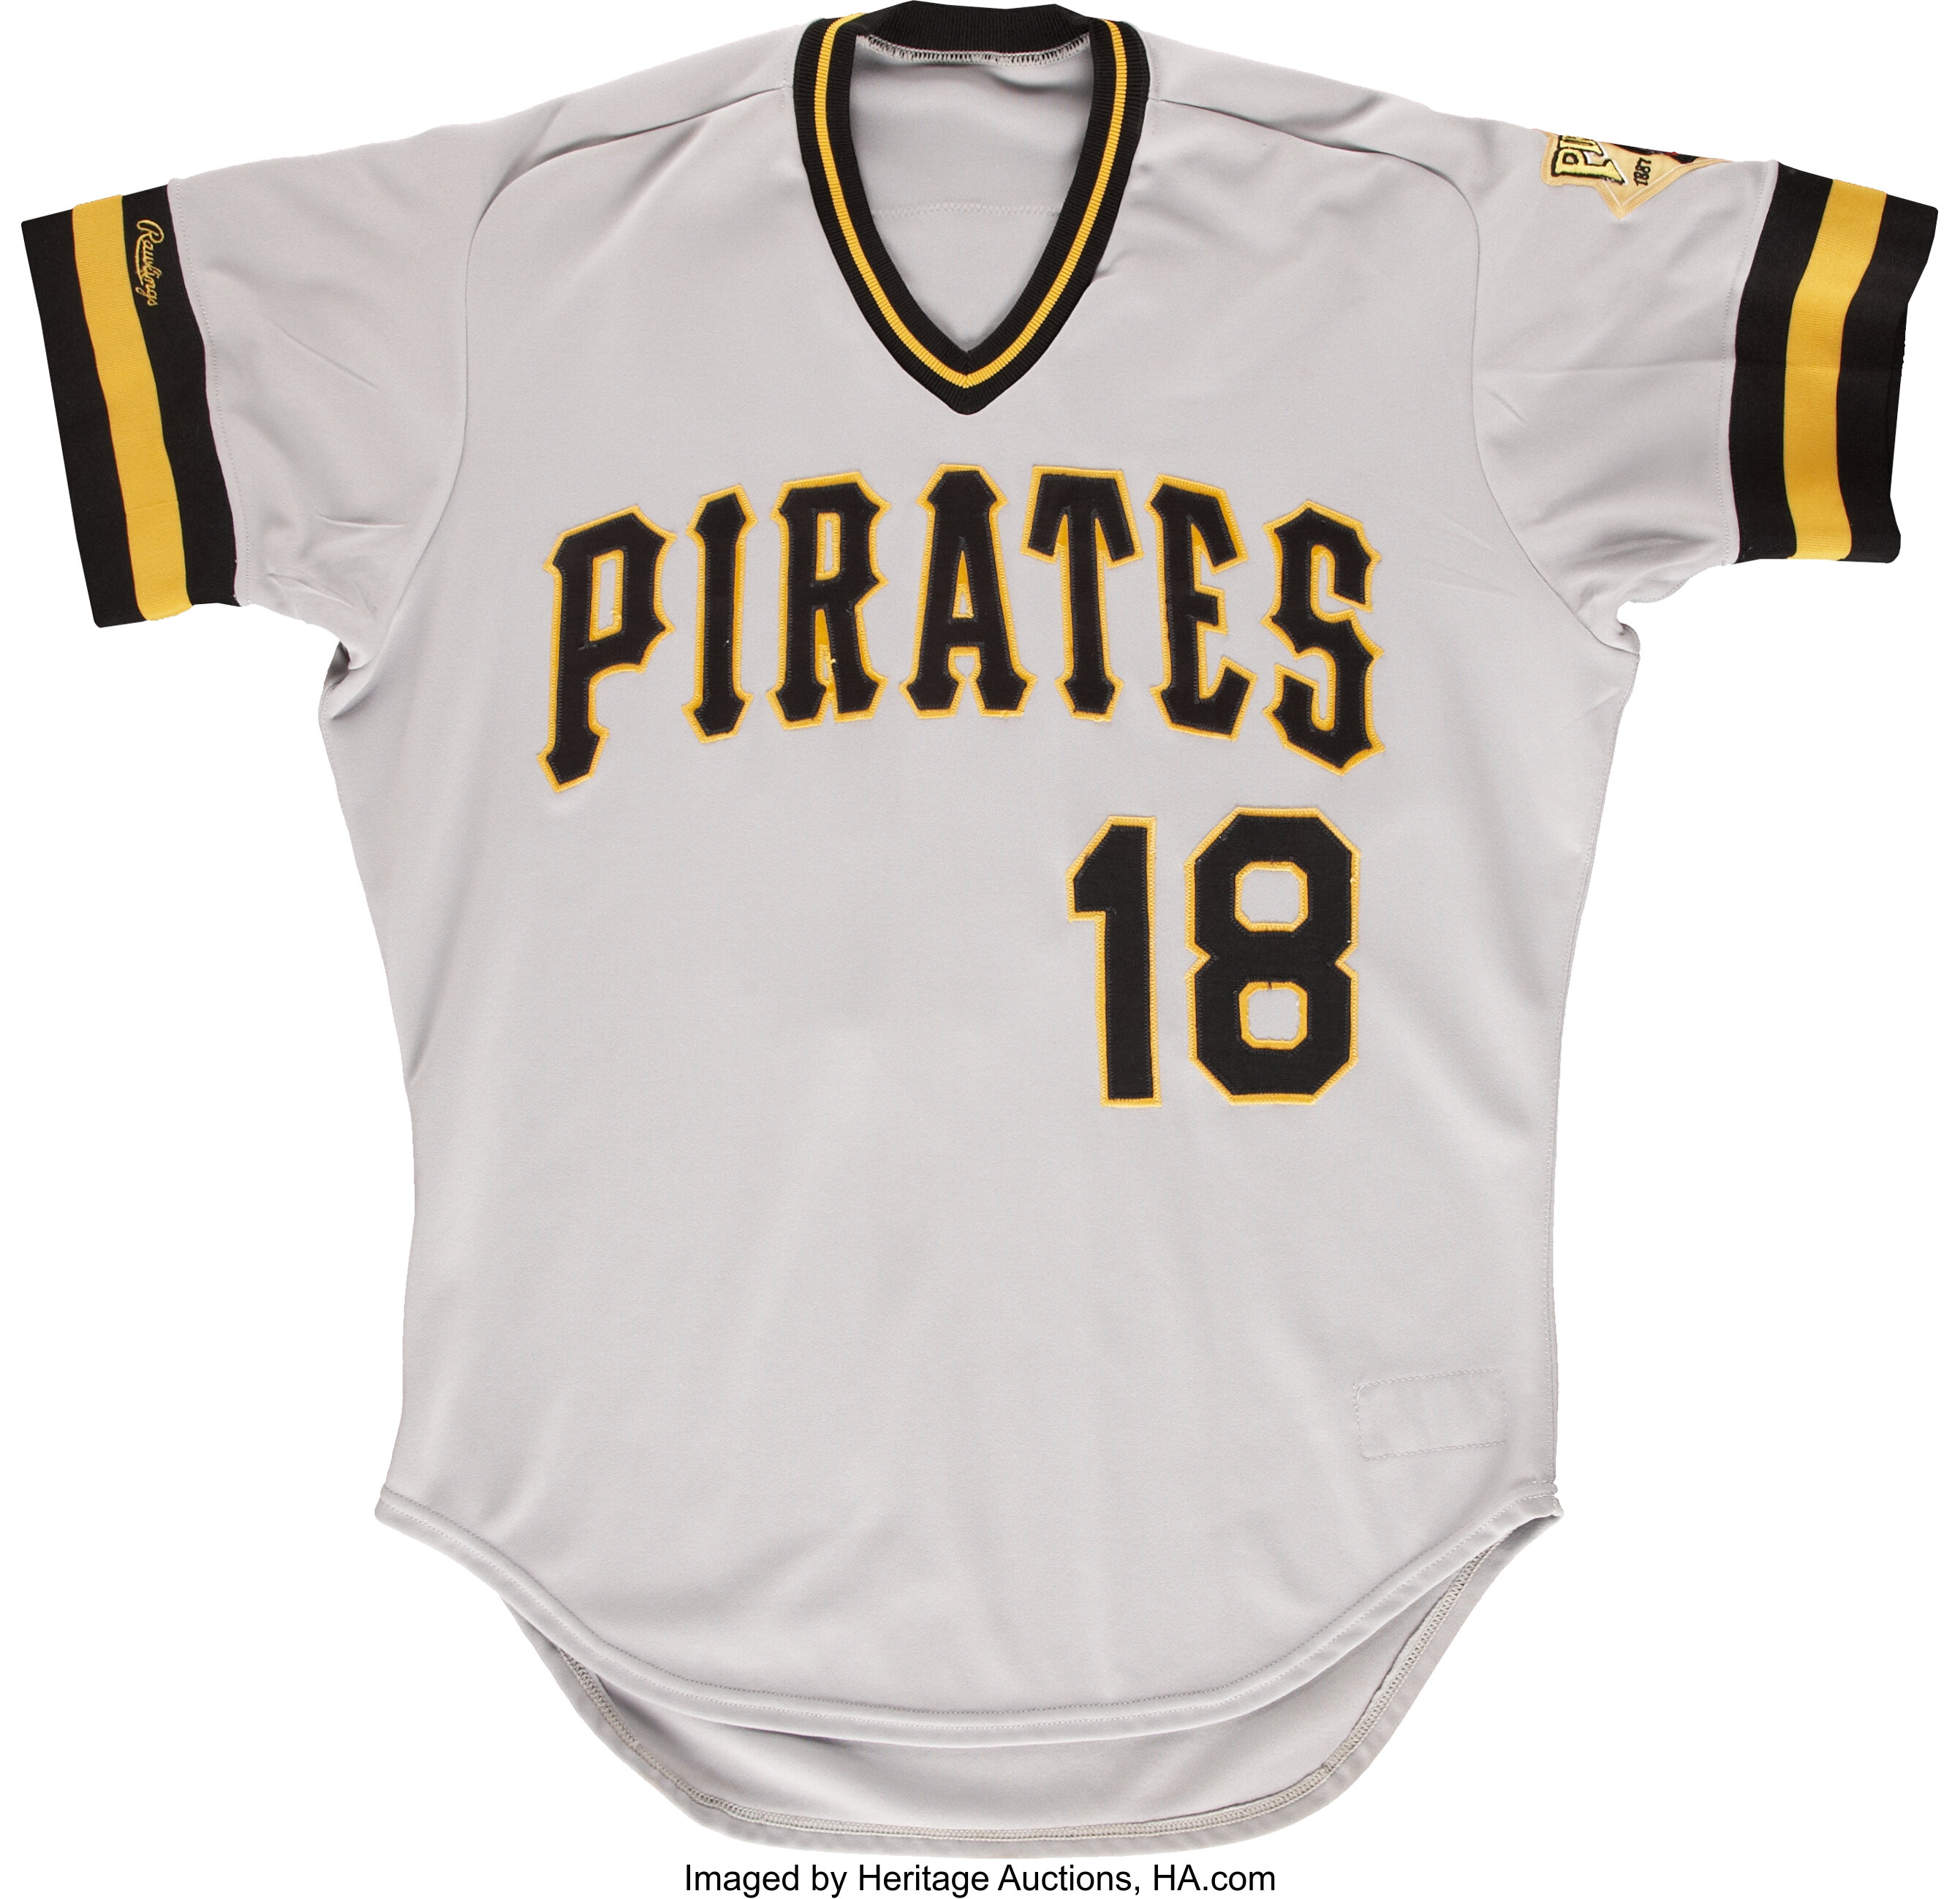 1994 Andy Van Slyke Pittsburgh Pirates Game Worn Jersey. , Lot #44130